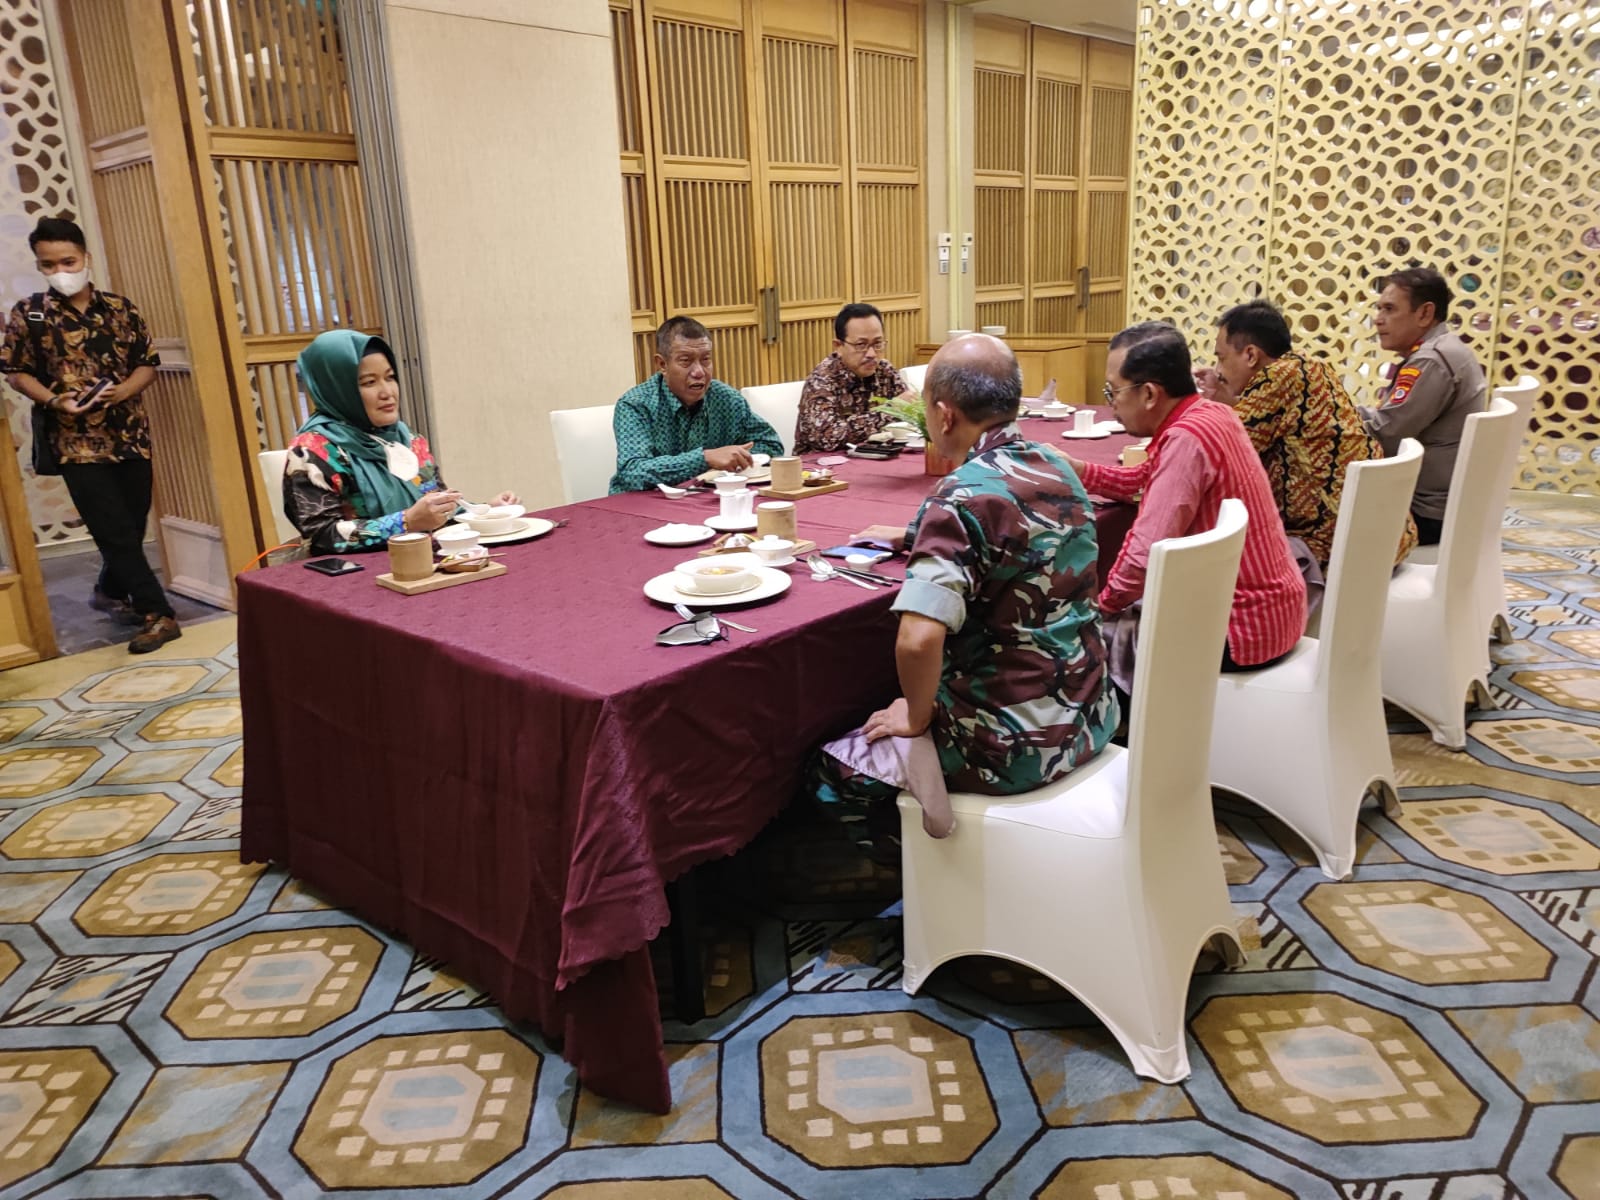 Ketua Pengadilan Negeri Yogyakarta Menghadiri Kegiatan Silaturrahmi dan Syawalan 1 Syawal 1443 H Bersama Forkopimda Kota Yogyakarta